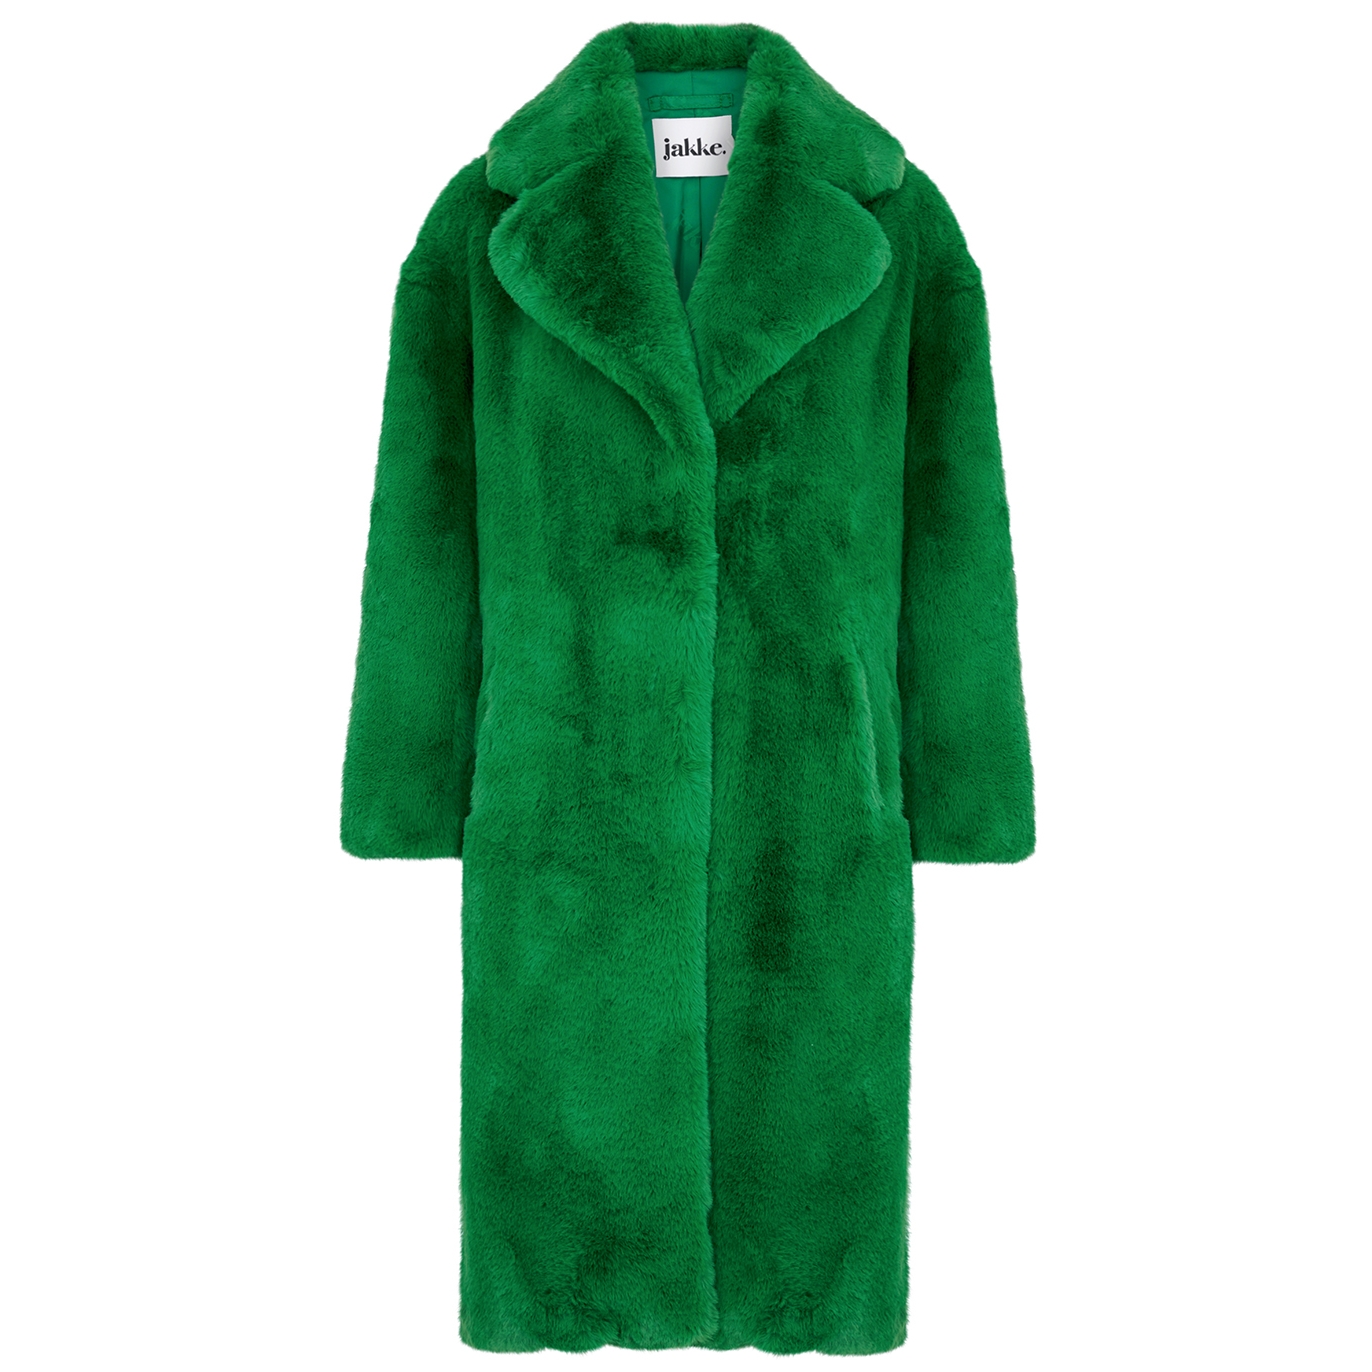 Jakke Katie Green Faux Fur Coat - XS